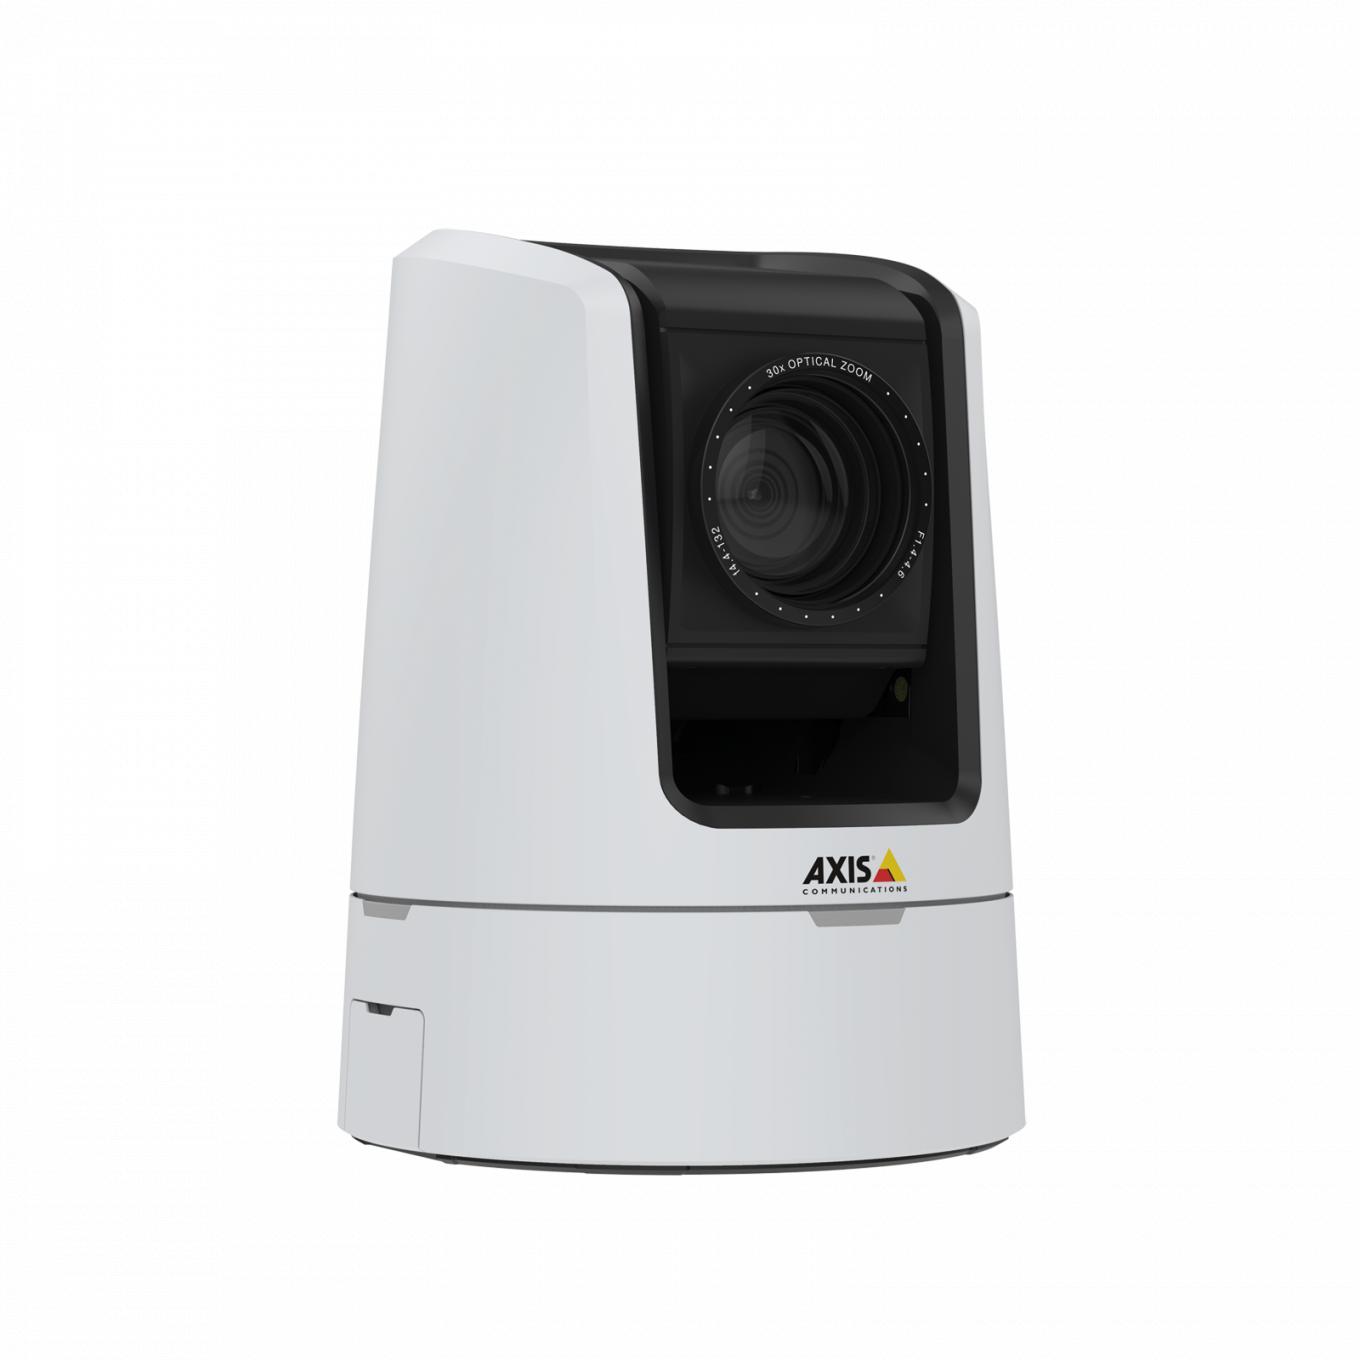 AXIS V5925 PTZ Network Camera proporciona una calidad de transmisión HDTV 1080p.